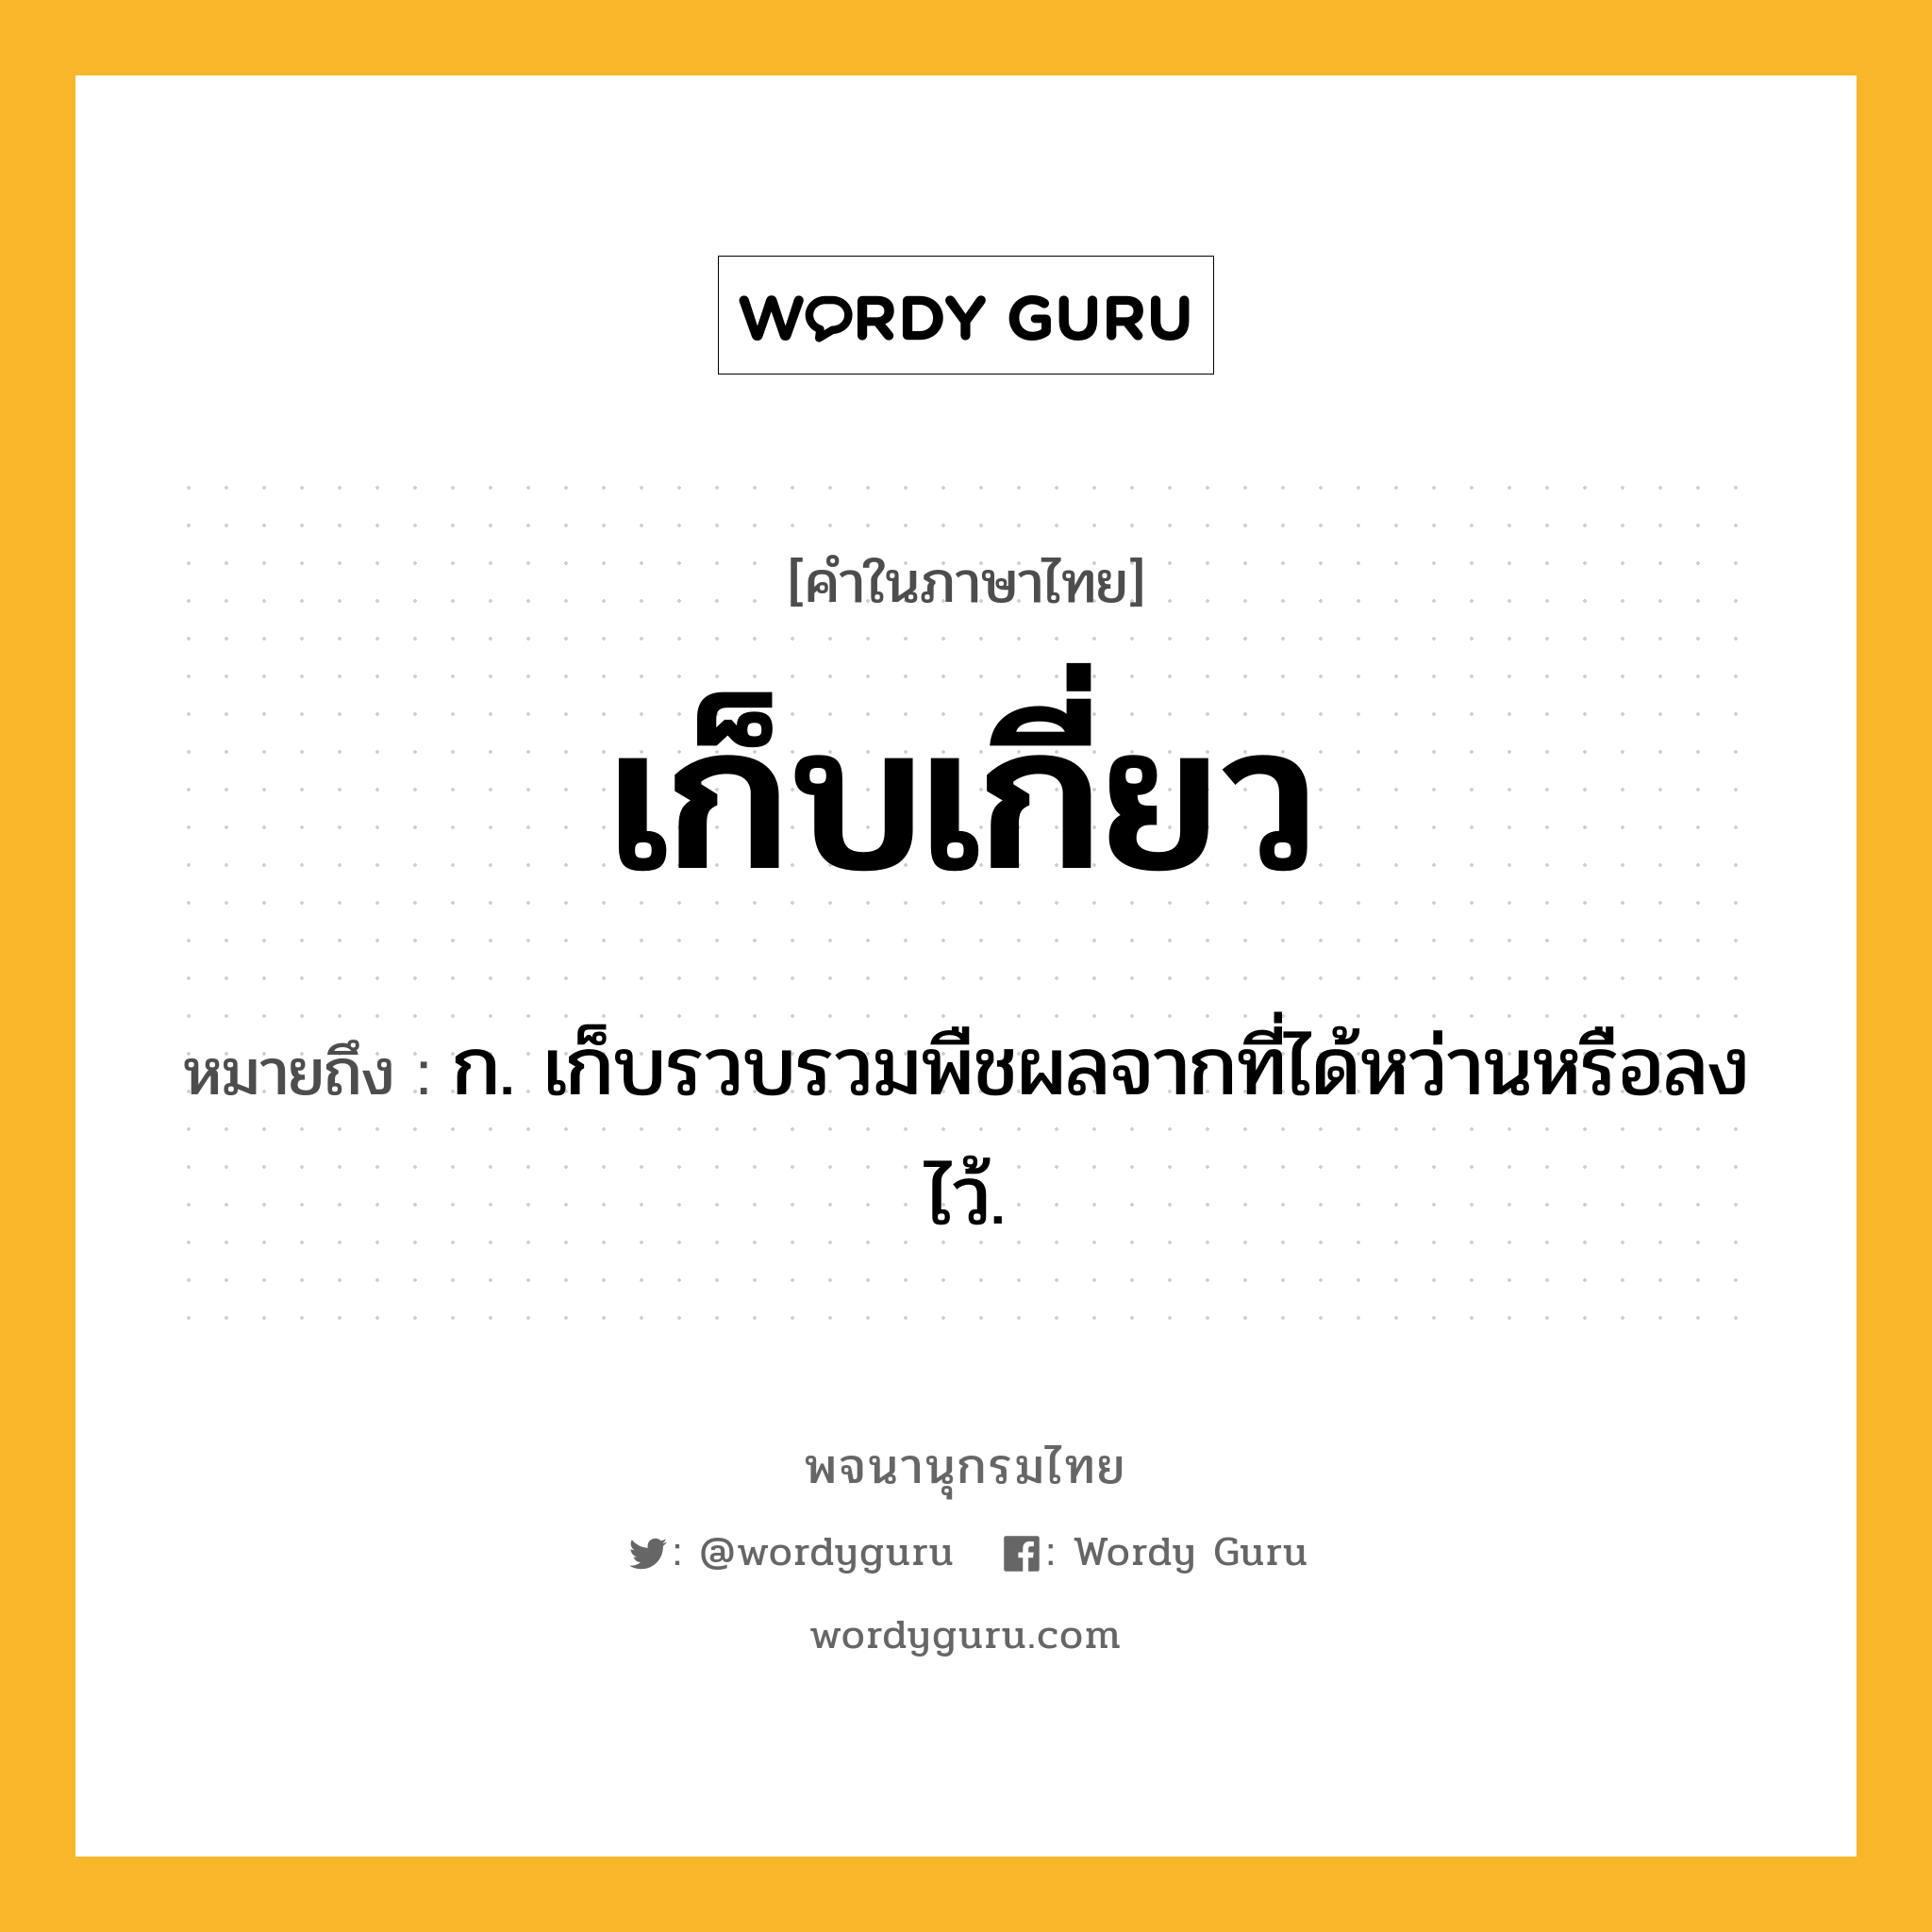 เก็บเกี่ยว ความหมาย หมายถึงอะไร?, คำในภาษาไทย เก็บเกี่ยว หมายถึง ก. เก็บรวบรวมพืชผลจากที่ได้หว่านหรือลงไว้.